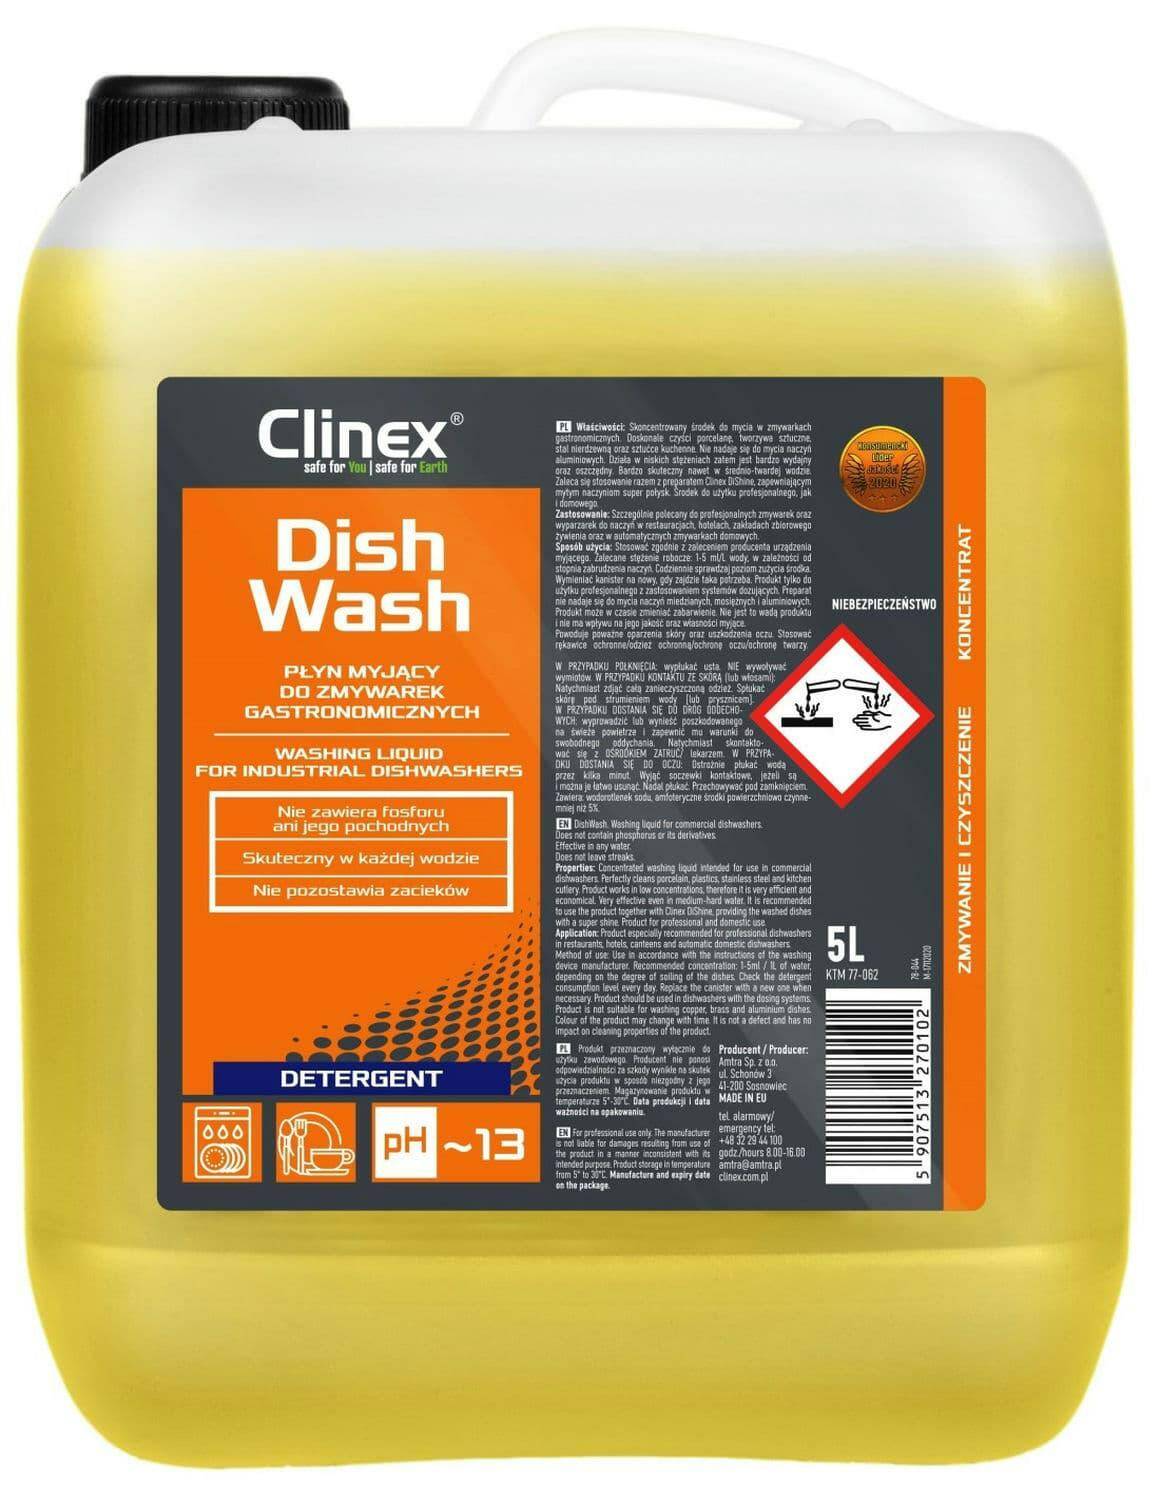 CLINEX DishWash 5L płyn myjący do